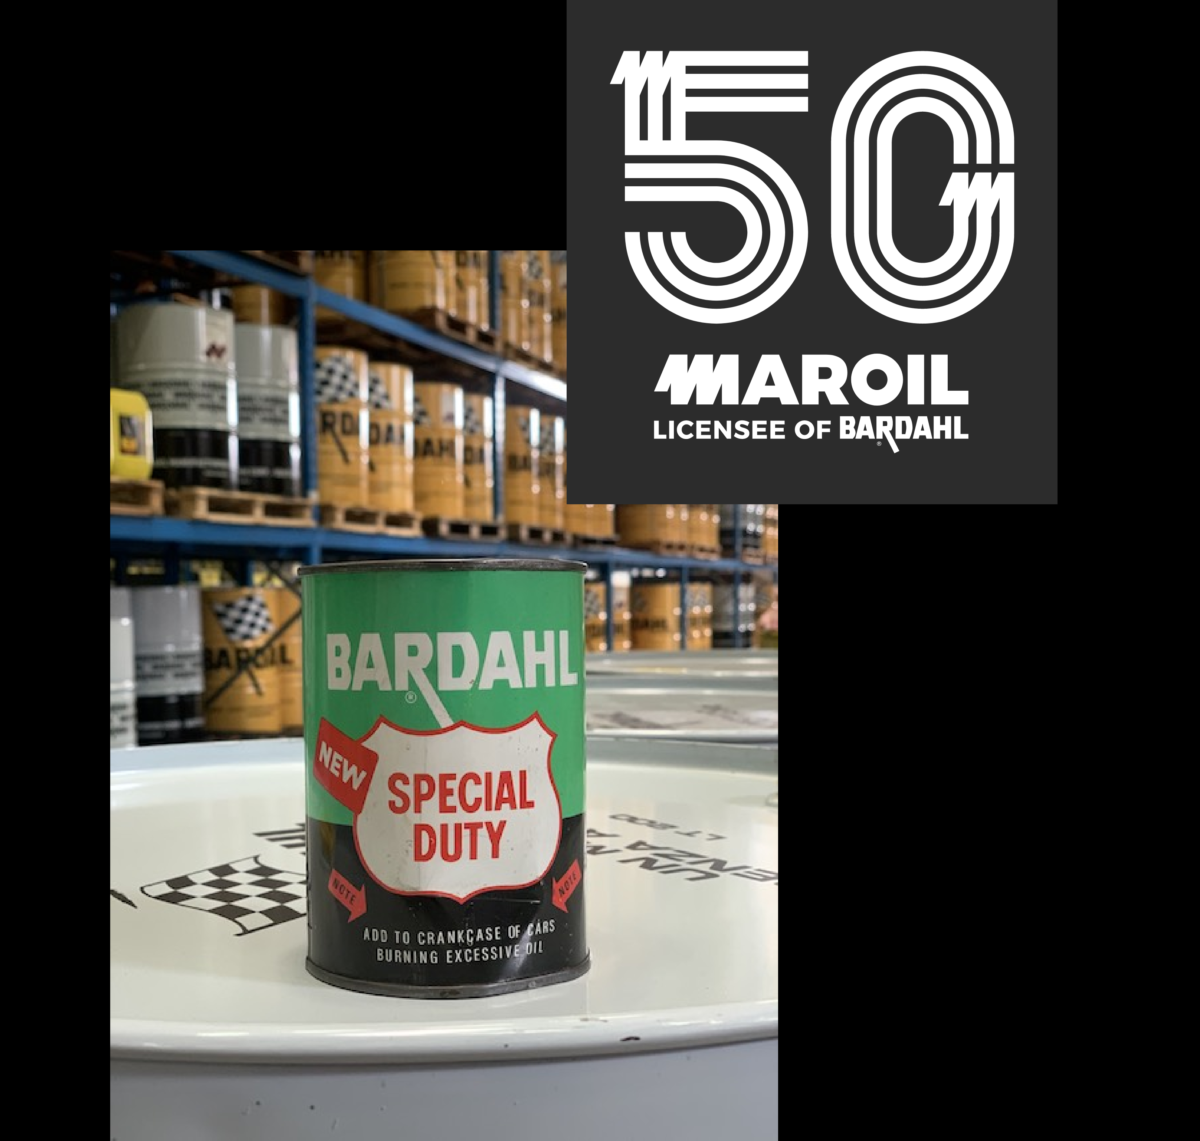 Maroil-Bardahl Italia: 50 anni di eccellenza